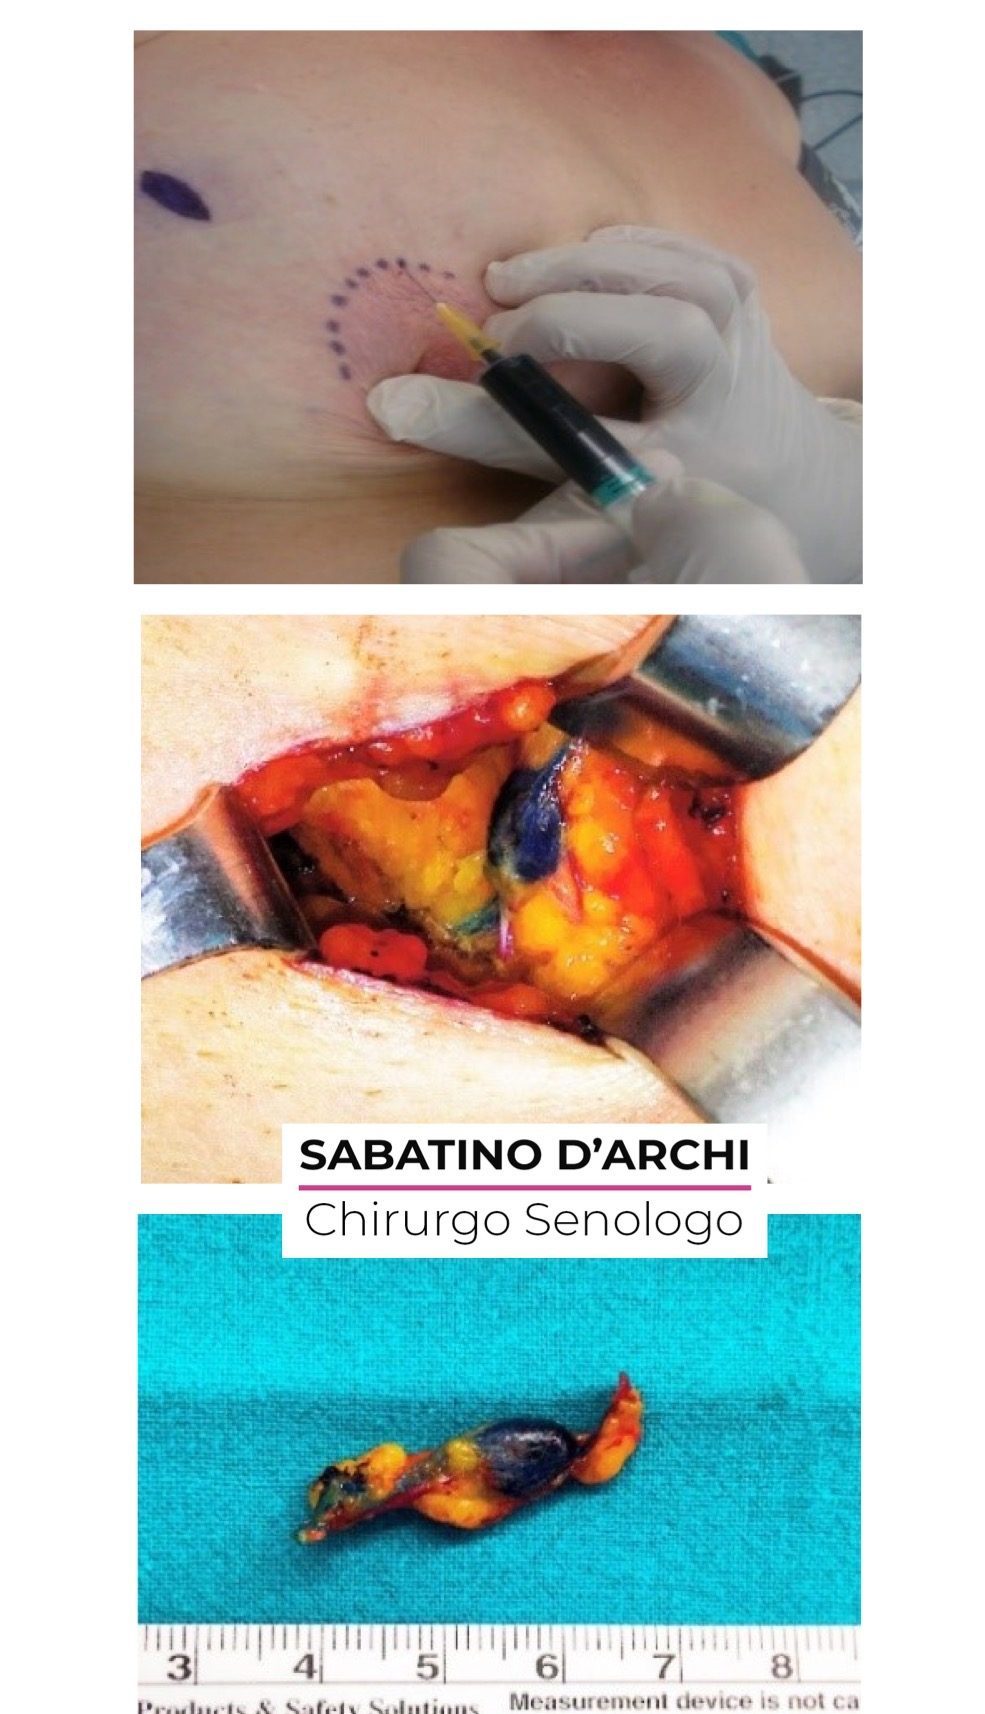 dottor-sabatino-d-archi-chirurgo-senologo-attivita-chirurgica-biopsia-del-linfonodo-sentinella